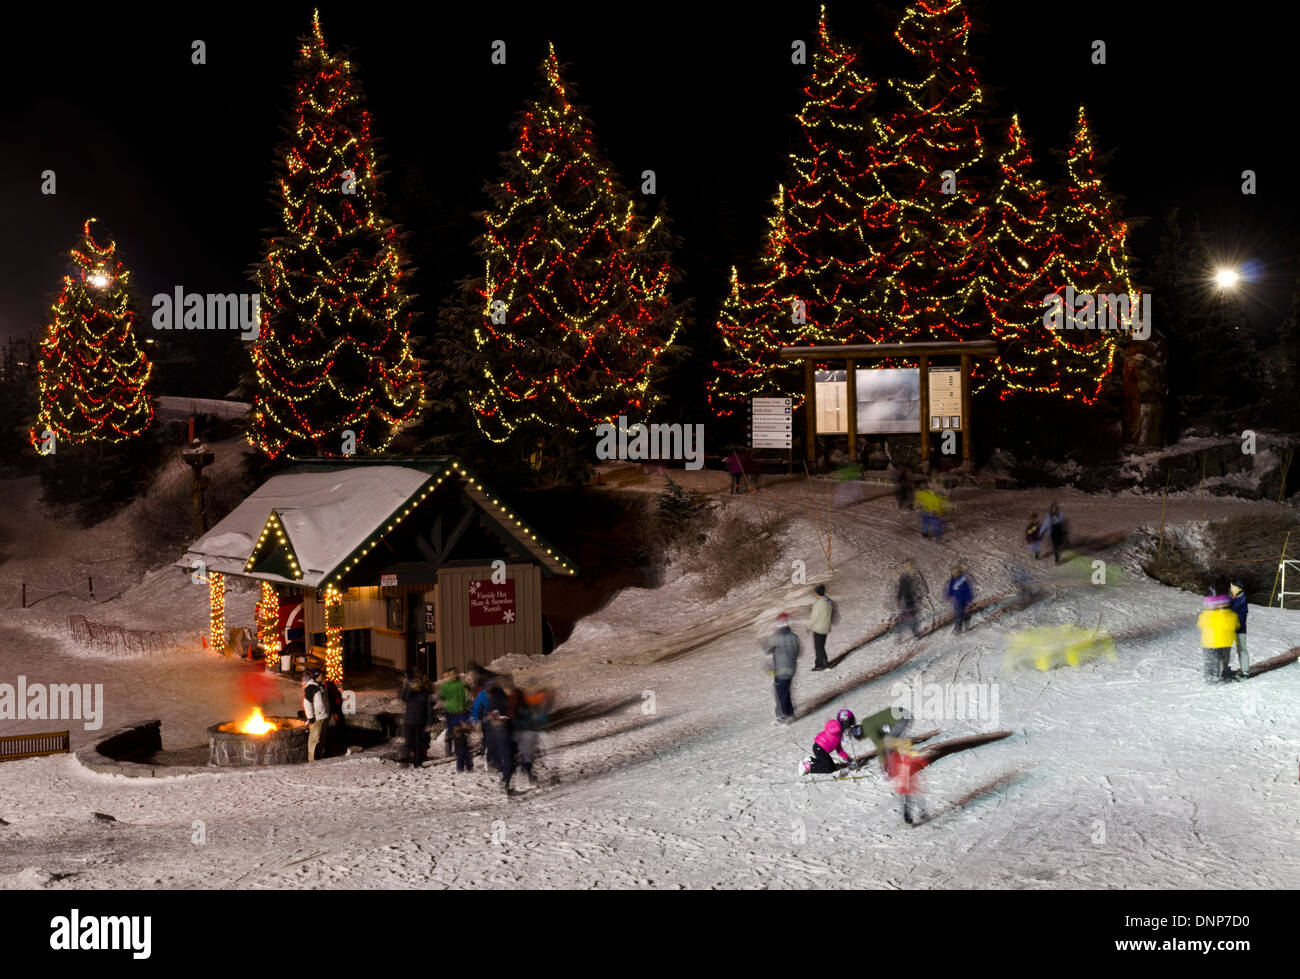 Les personnes bénéficiant de l'hiver au sommet de Grouse Mountain à Vancouver, Canada. Les arbres de Noël illuminés, patinoire, et un feu de joie. Banque D'Images